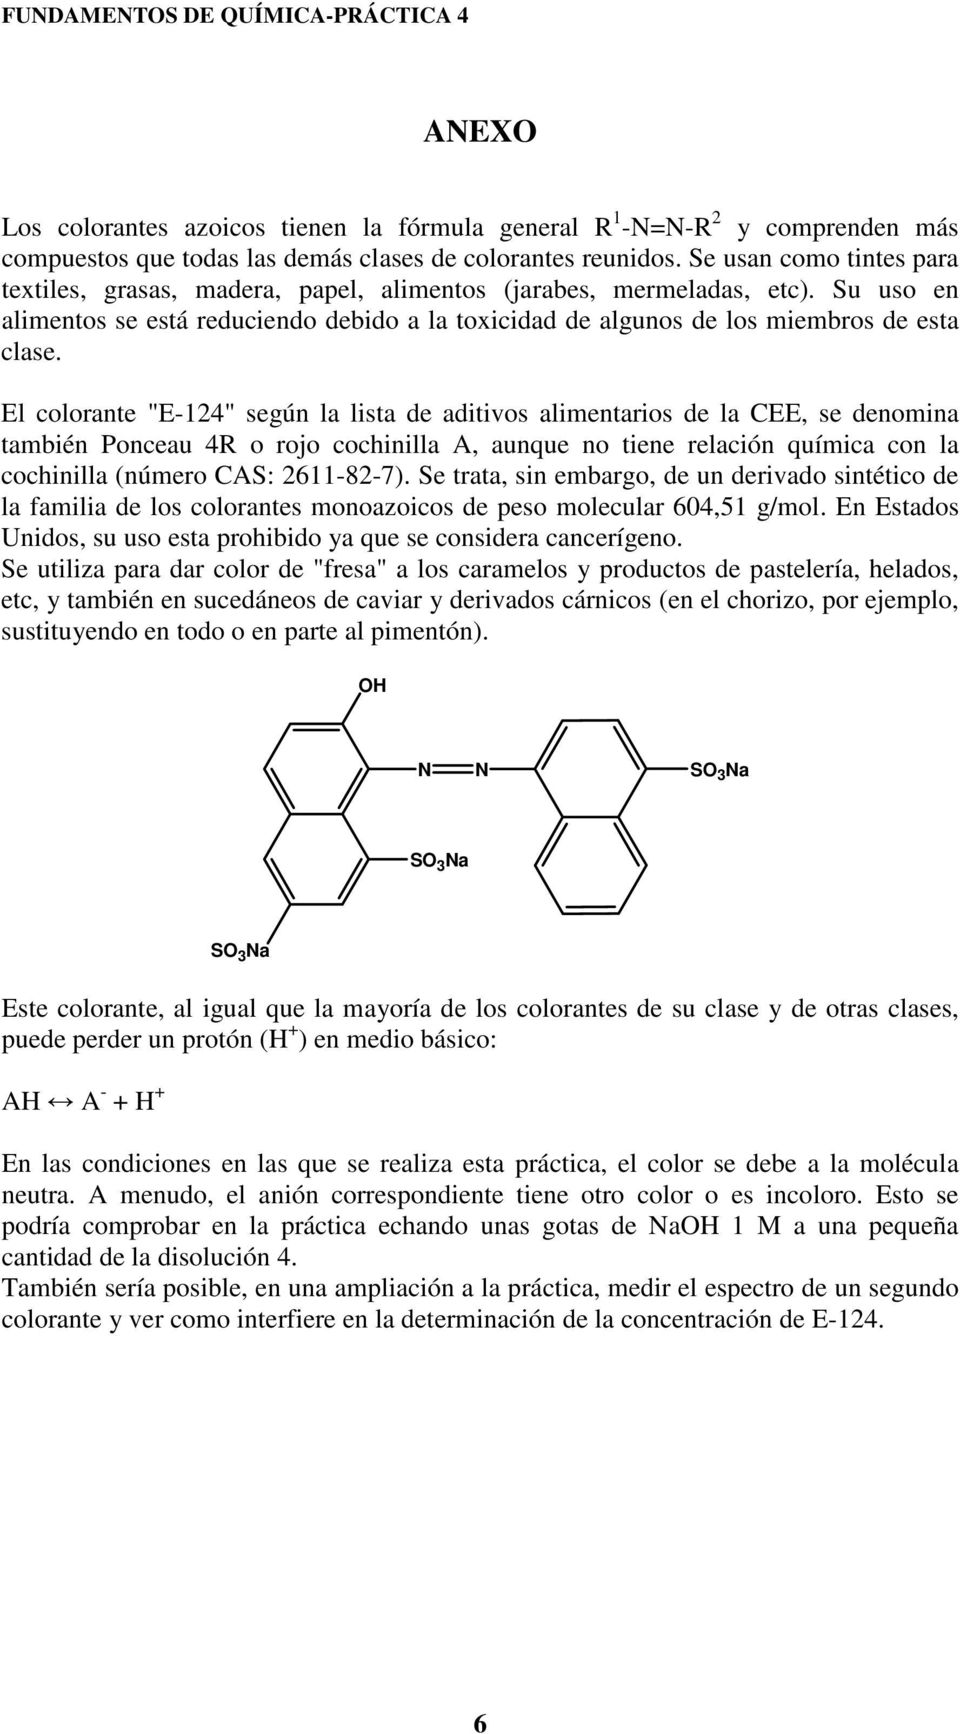 El colorante "E-124" según la lista de aditivos alimentarios de la CEE, se denomina también Ponceau 4R o rojo cochinilla A, aunque no tiene relación química con la cochinilla (número CAS: 2611-82-7).